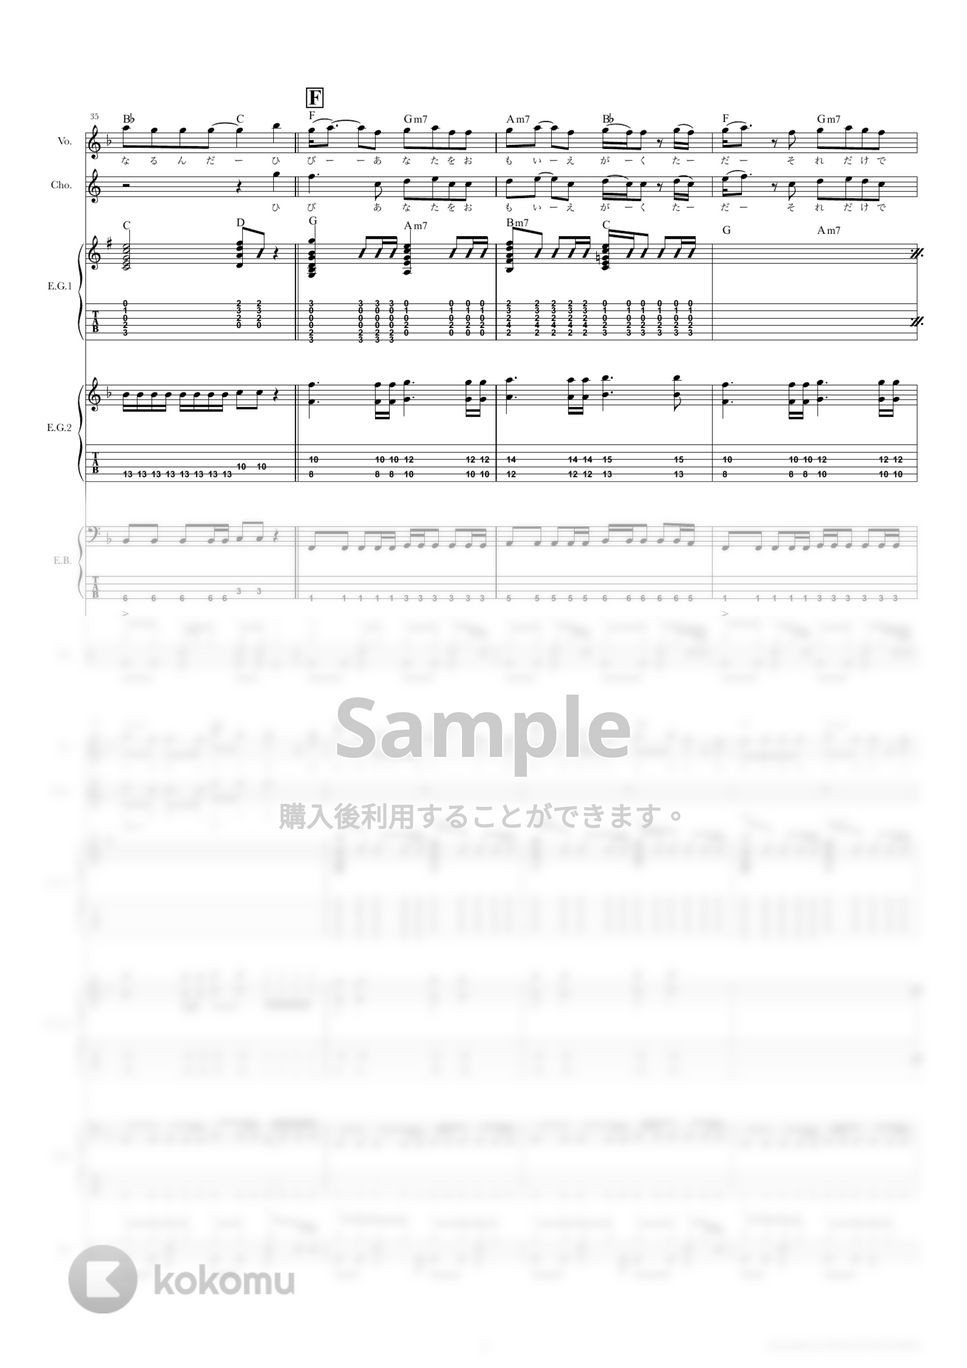 きのこ帝国 - 東京 (バンドスコア) by TRIAD GUITAR SCHOOL